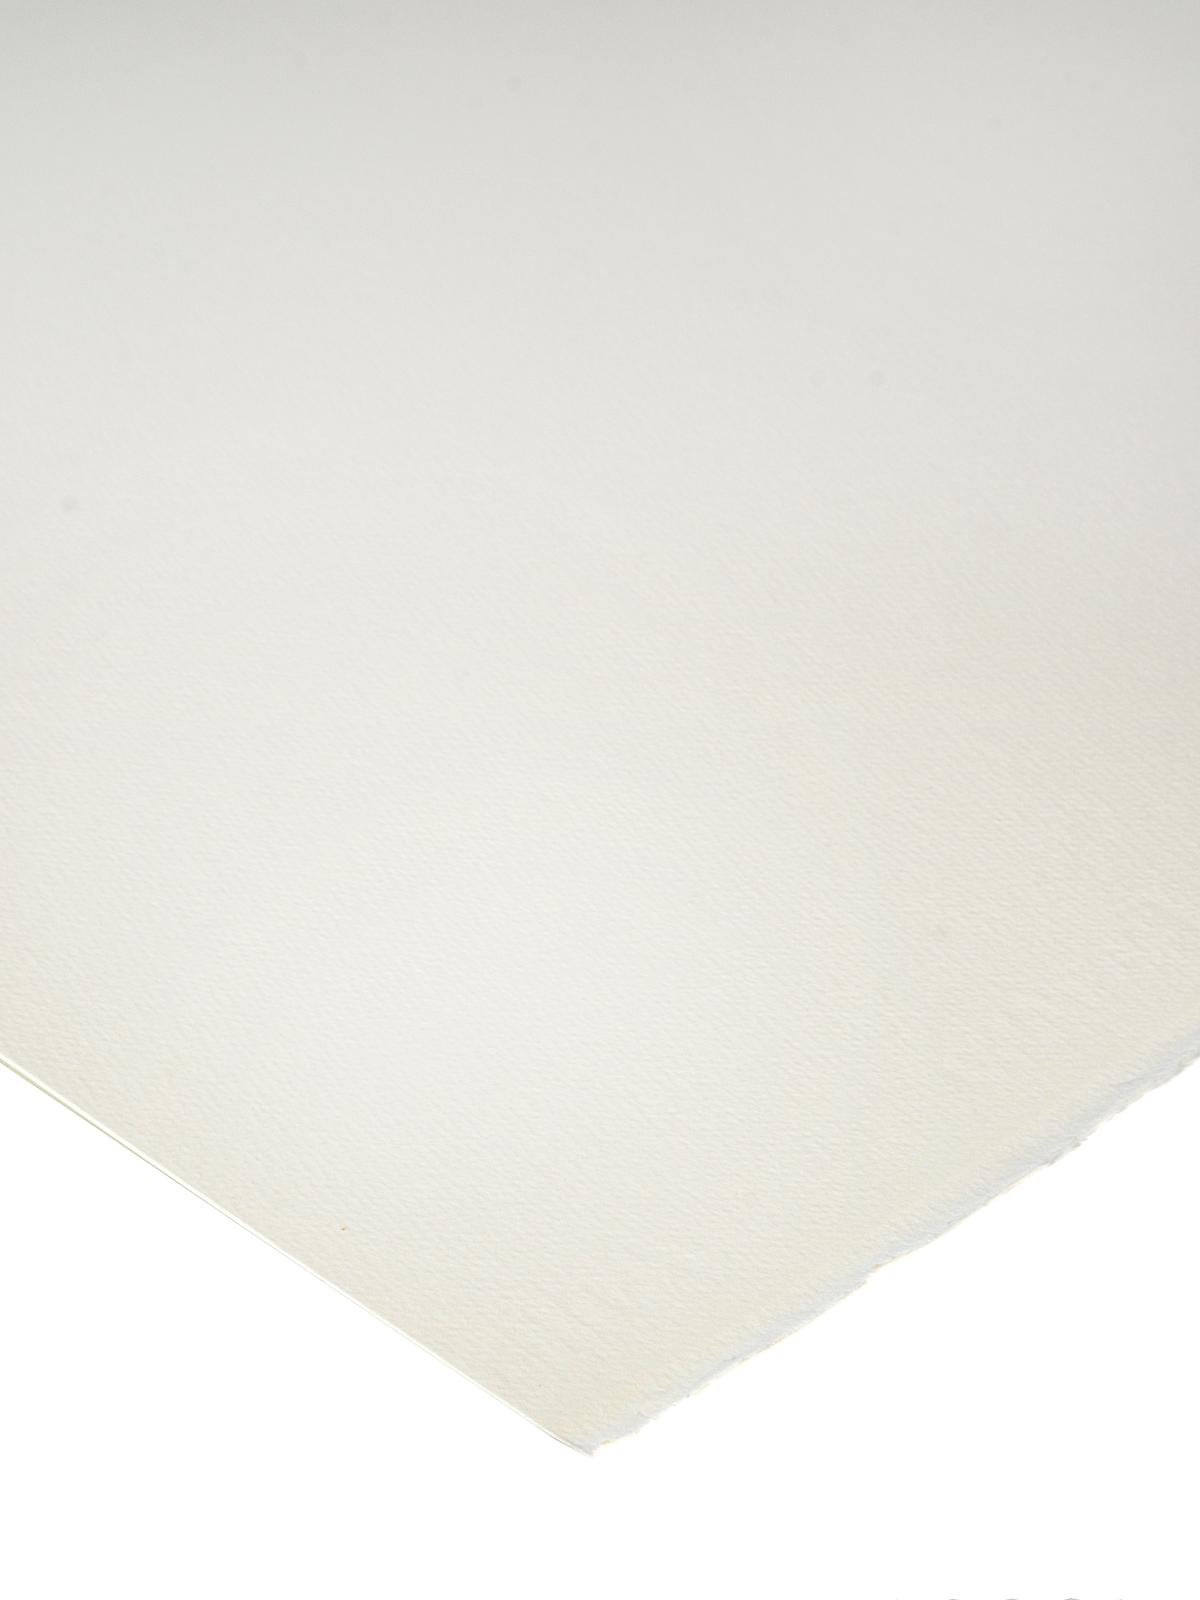 A4 FABRIANO ARTISTICO 200g/m² white Soft Pressed - Les papiers de Lucas